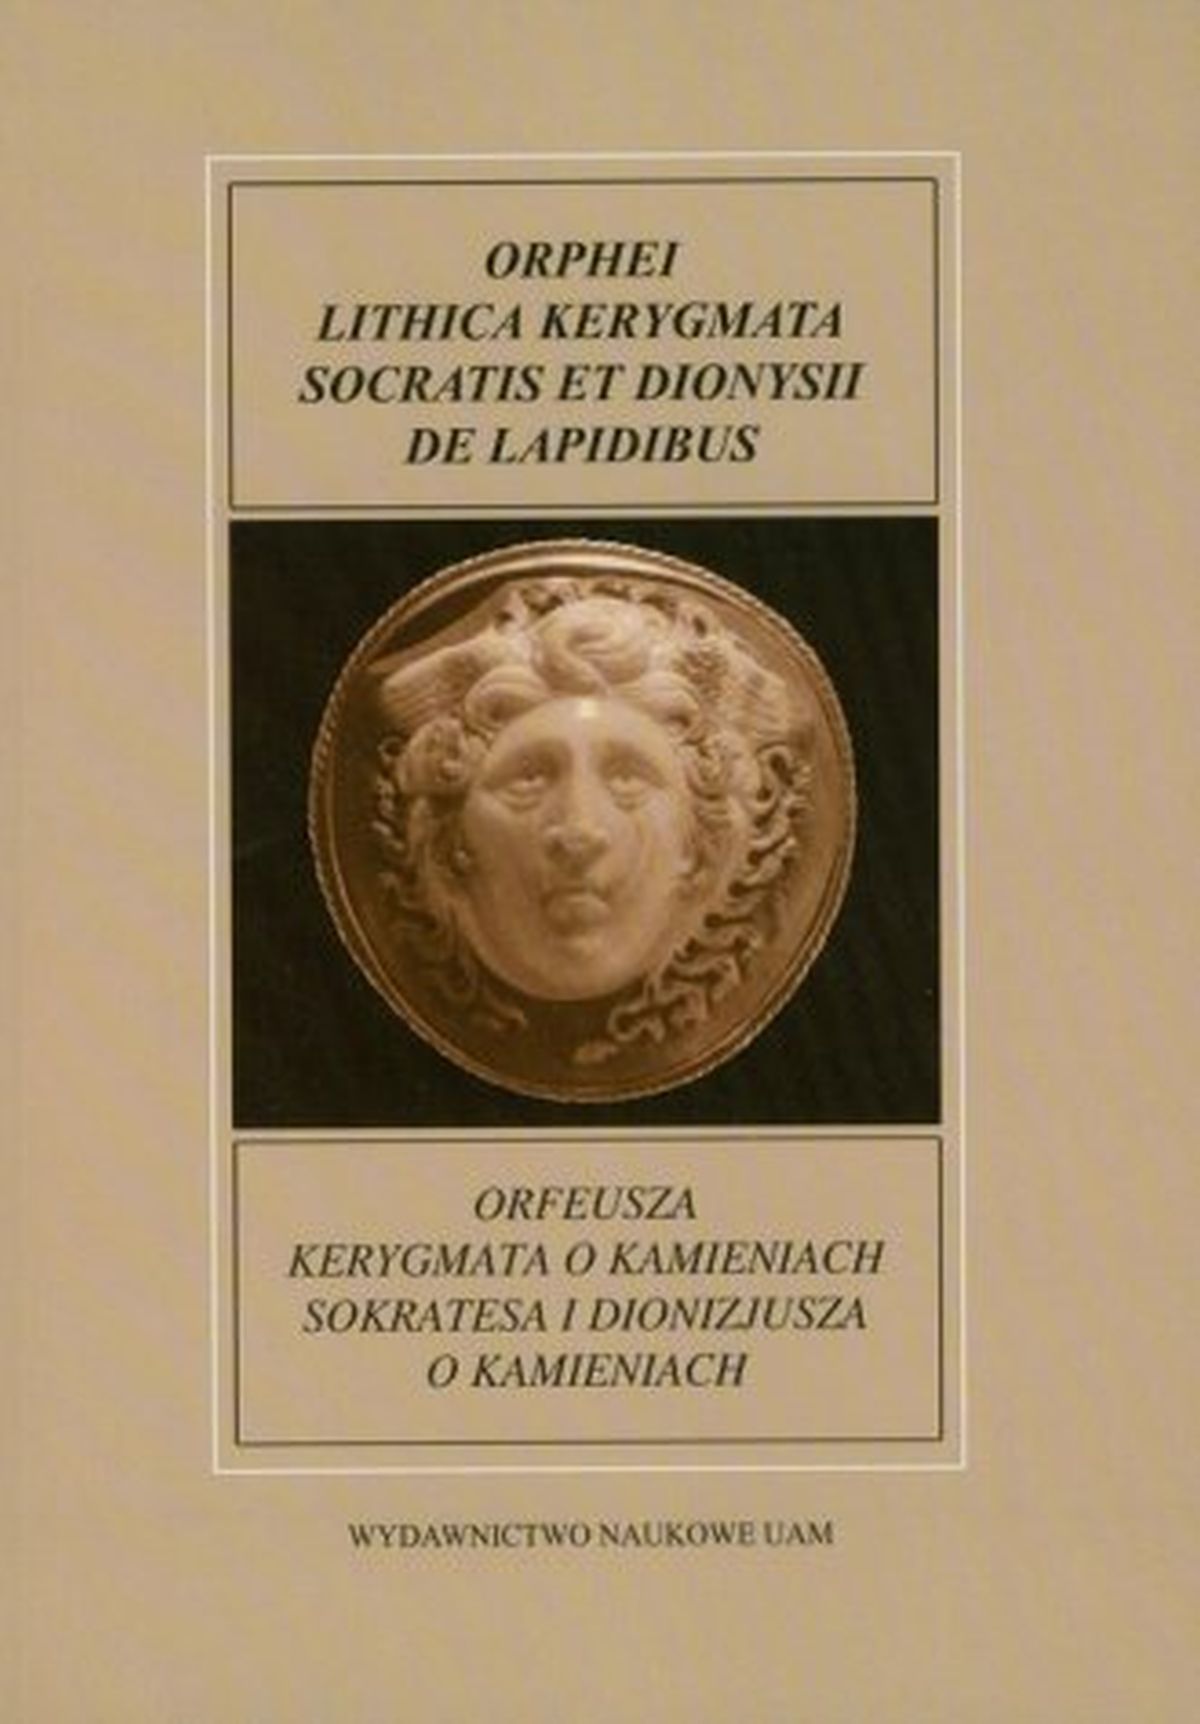 orfeusza-kerygmata-o-kamieniach-sokratesa-i-dionizjusza-o-kamieniach-fontes-historiae-antiquae-xxiii